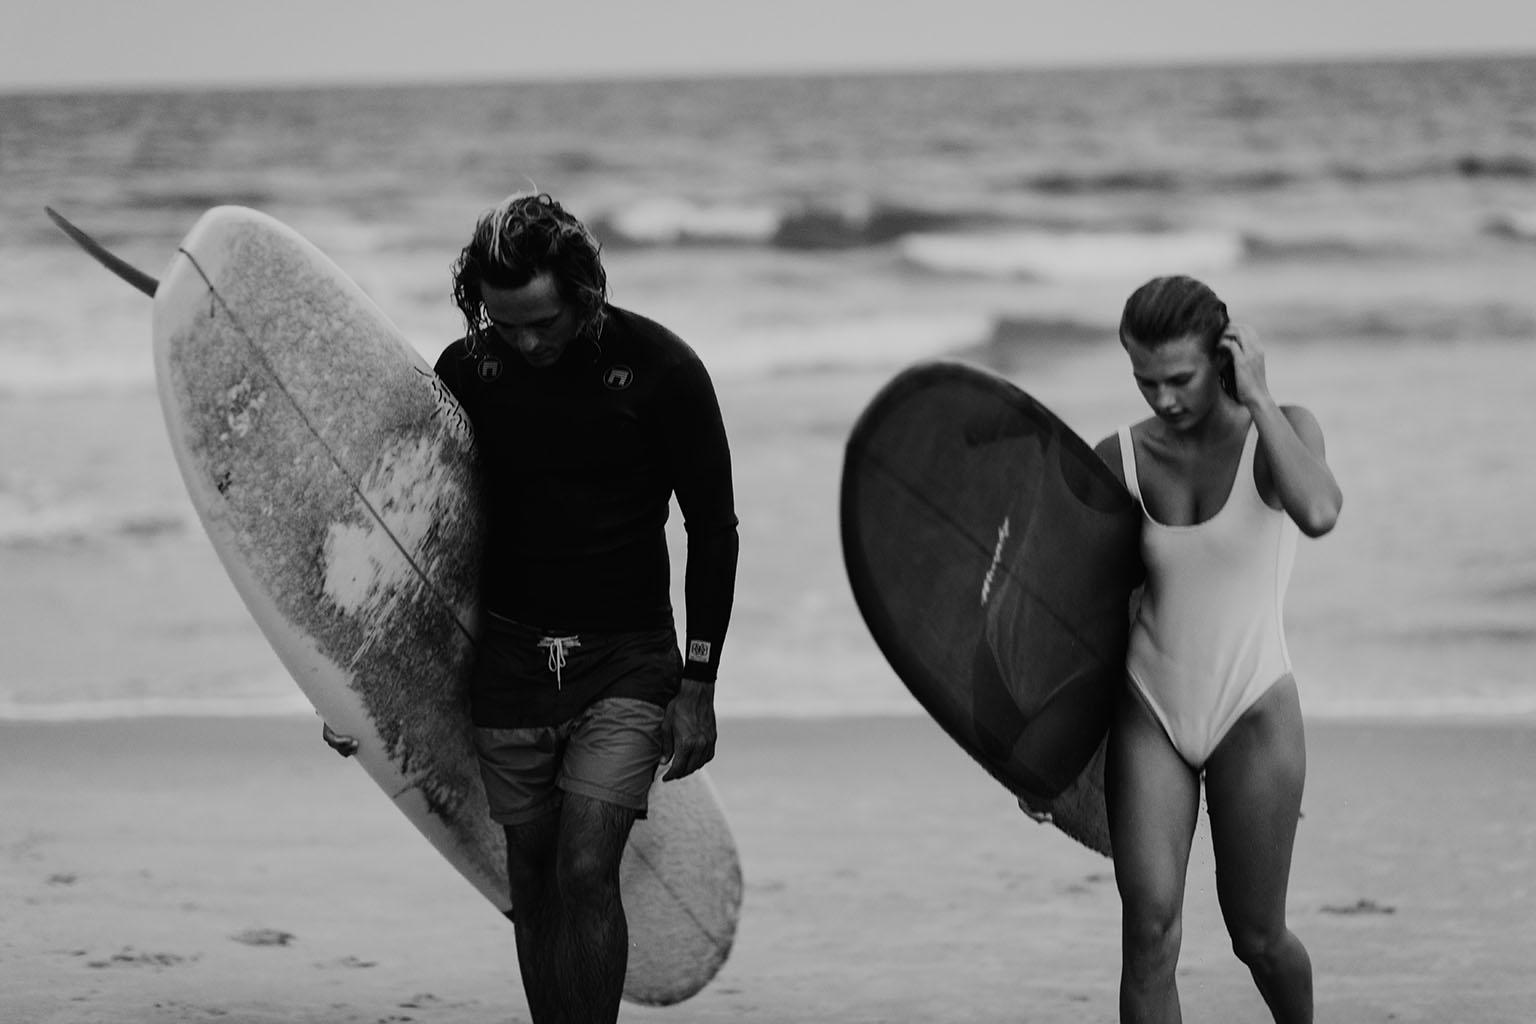 Art contemporain, Surfeurs avec des planches de surf sur une plage-Oceanside Trist 914 - Print de Addison Jones